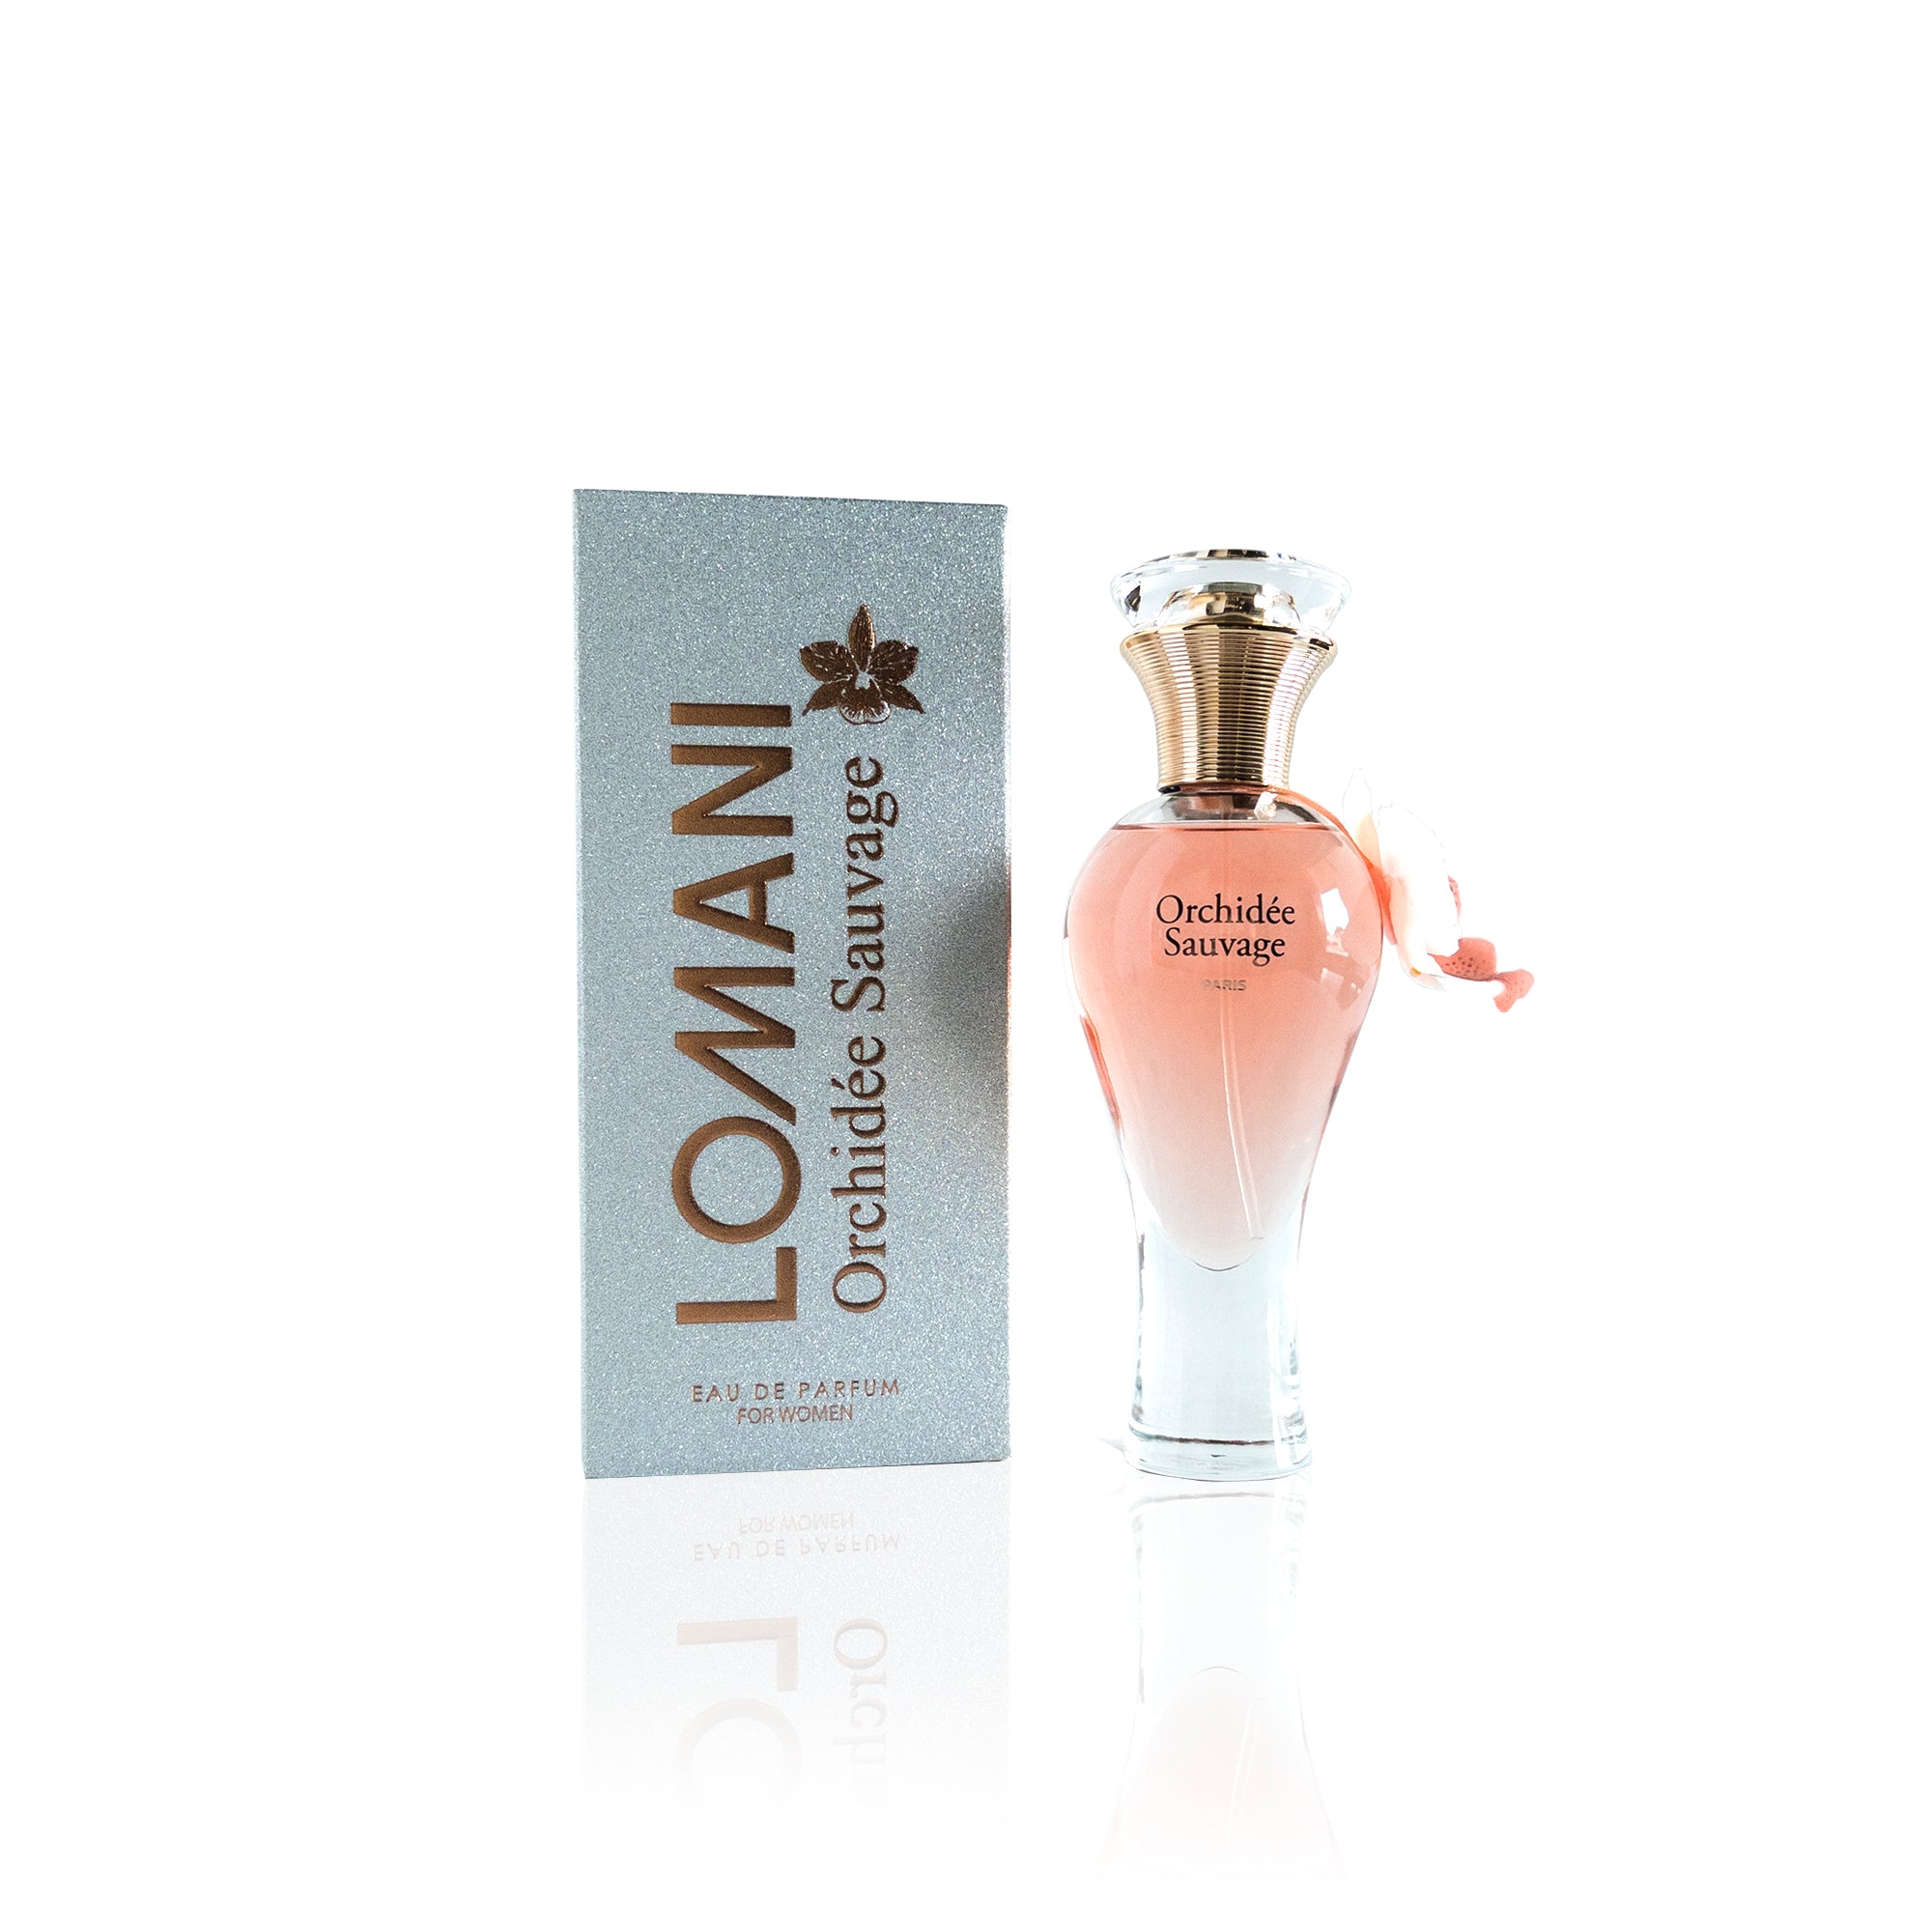 Lomani Private Collection Bleu Nuit Eau de Parfum Spray for Men